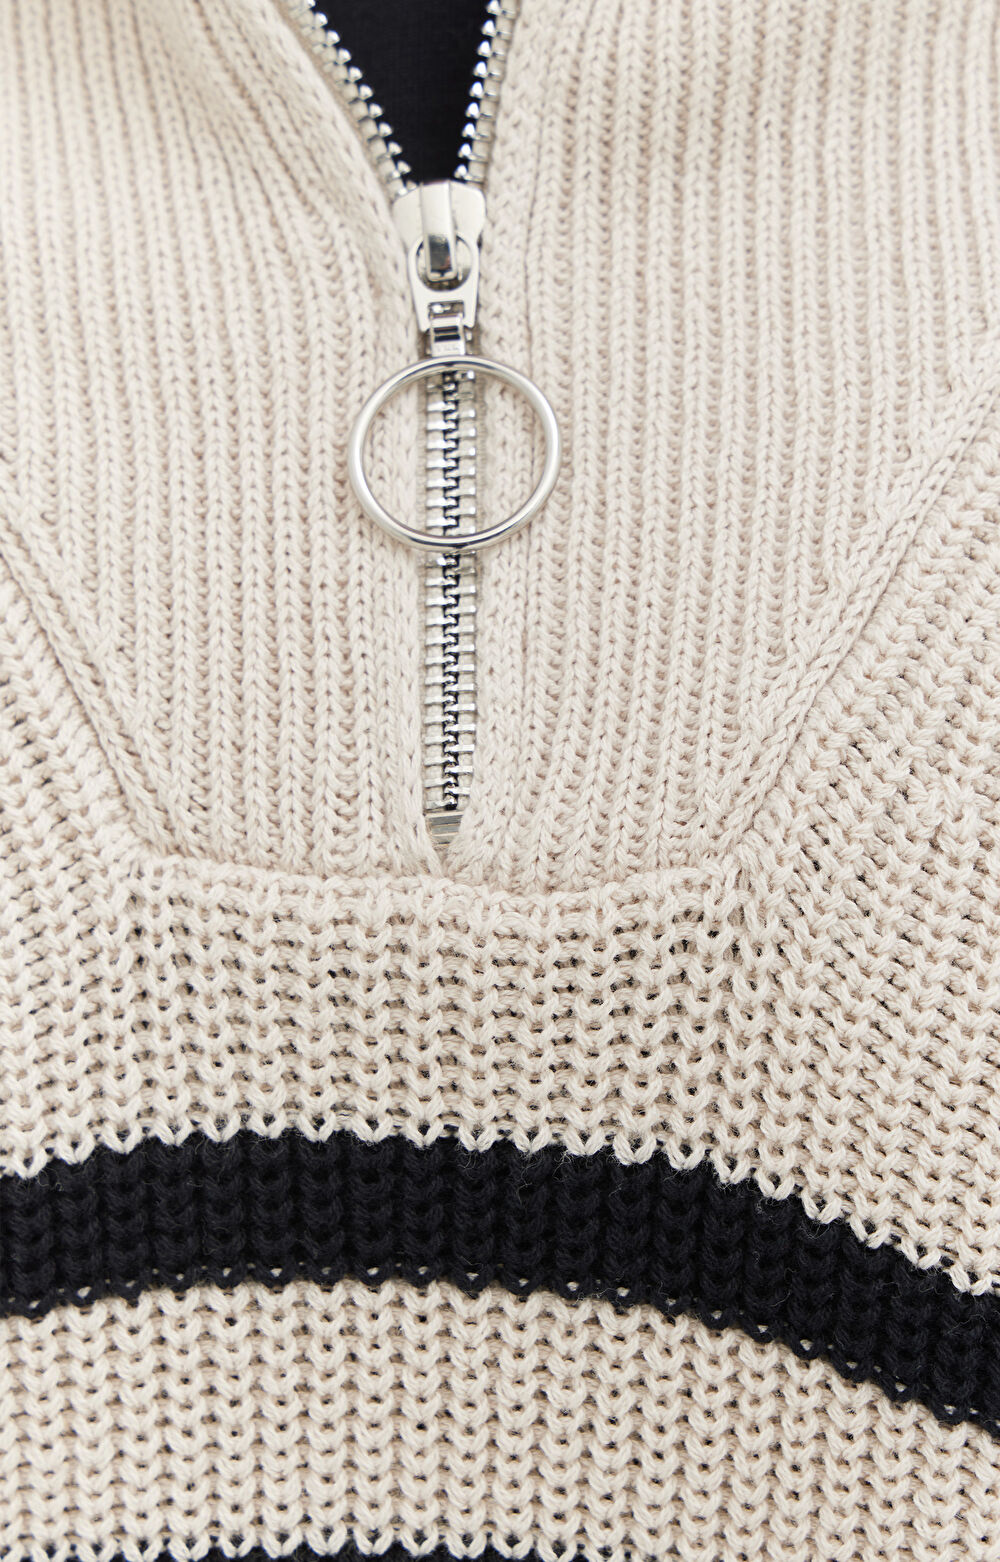 Bawełniany sweter w paski